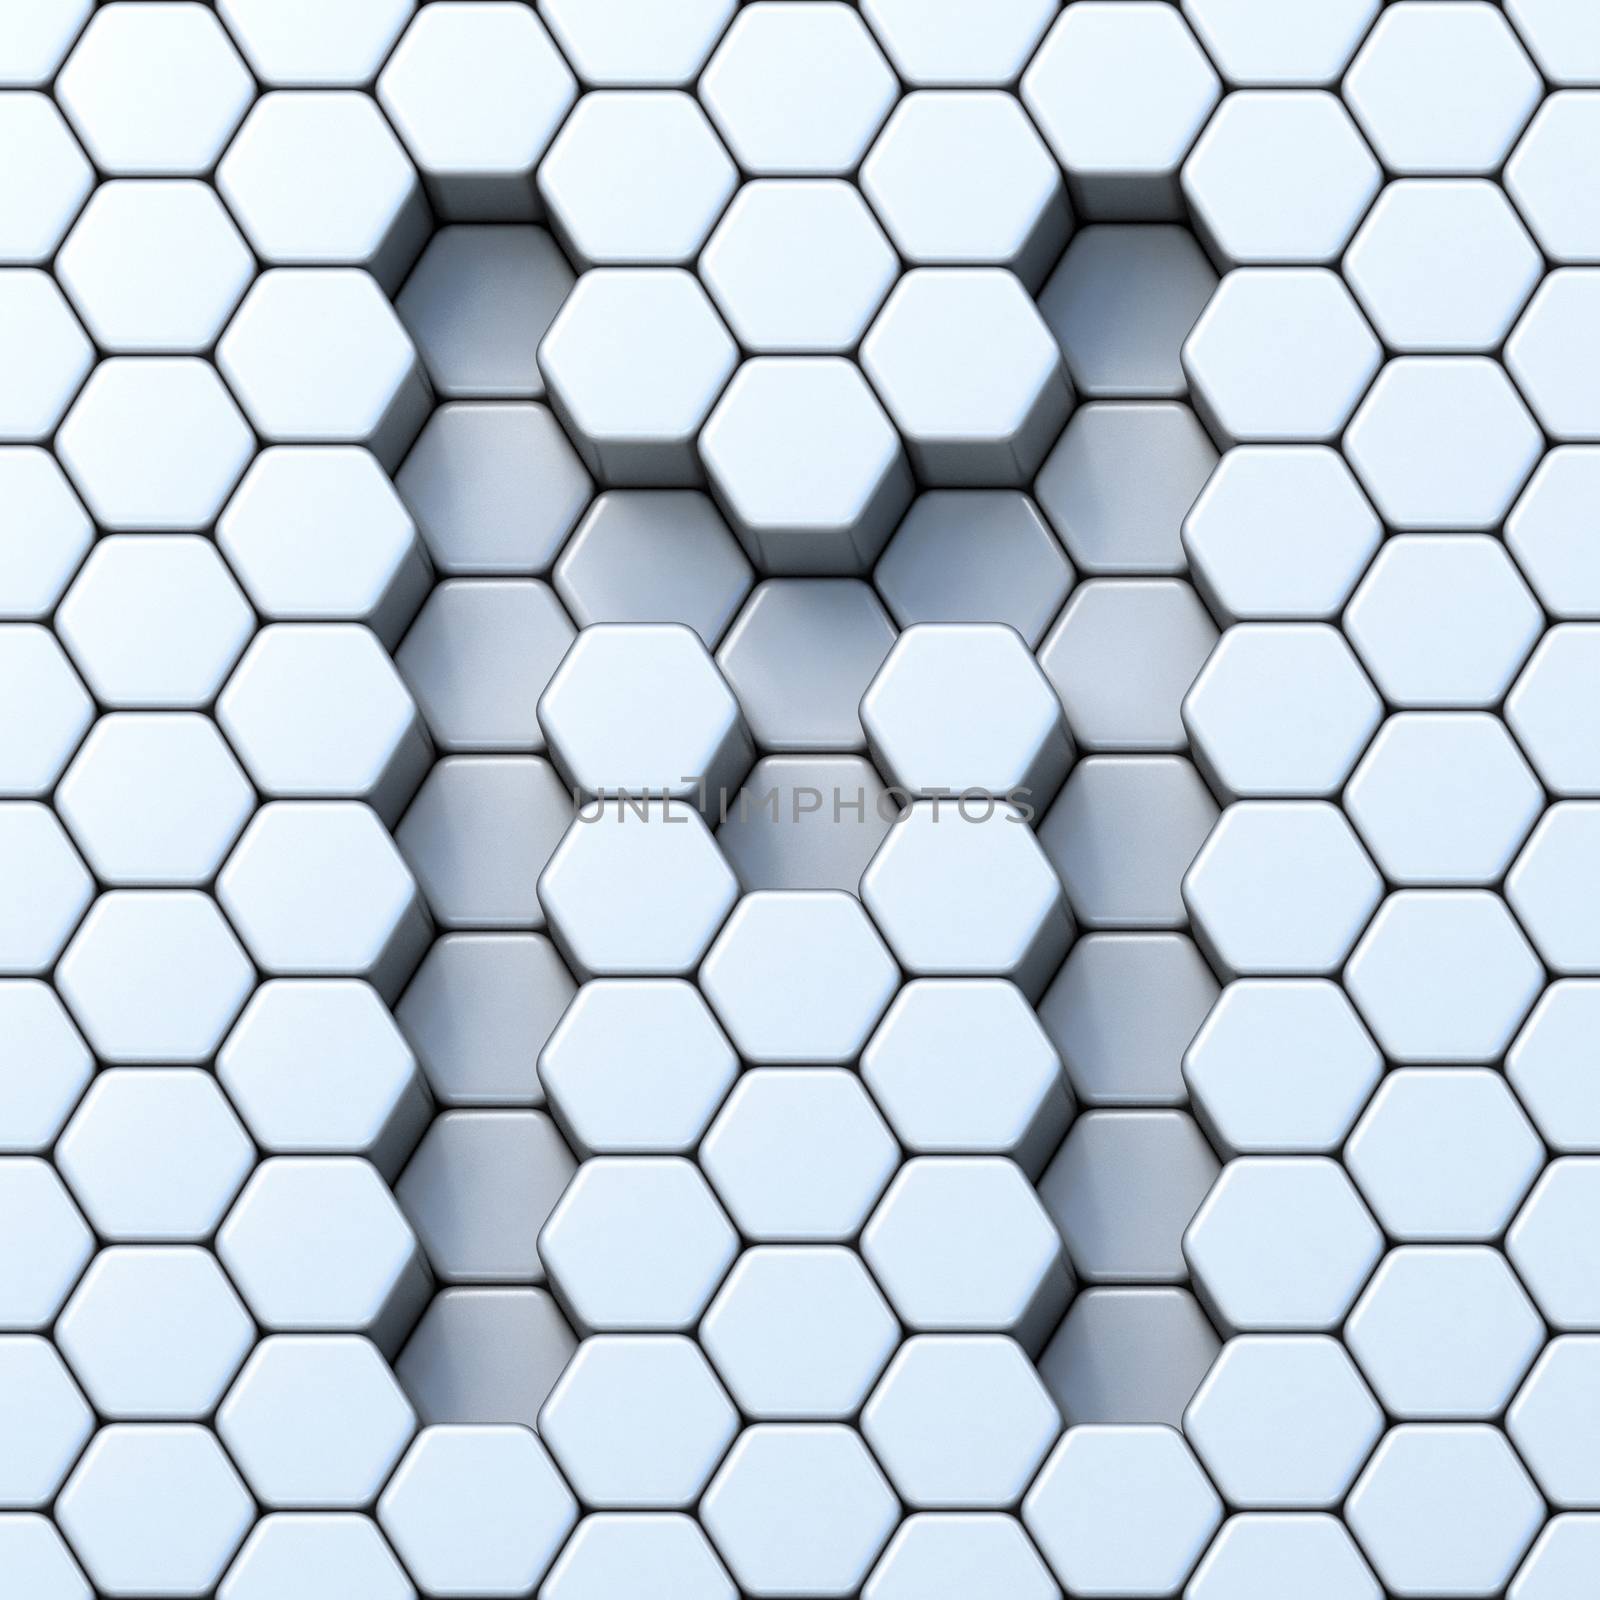 Hexagonal grid letter M 3D render illustration